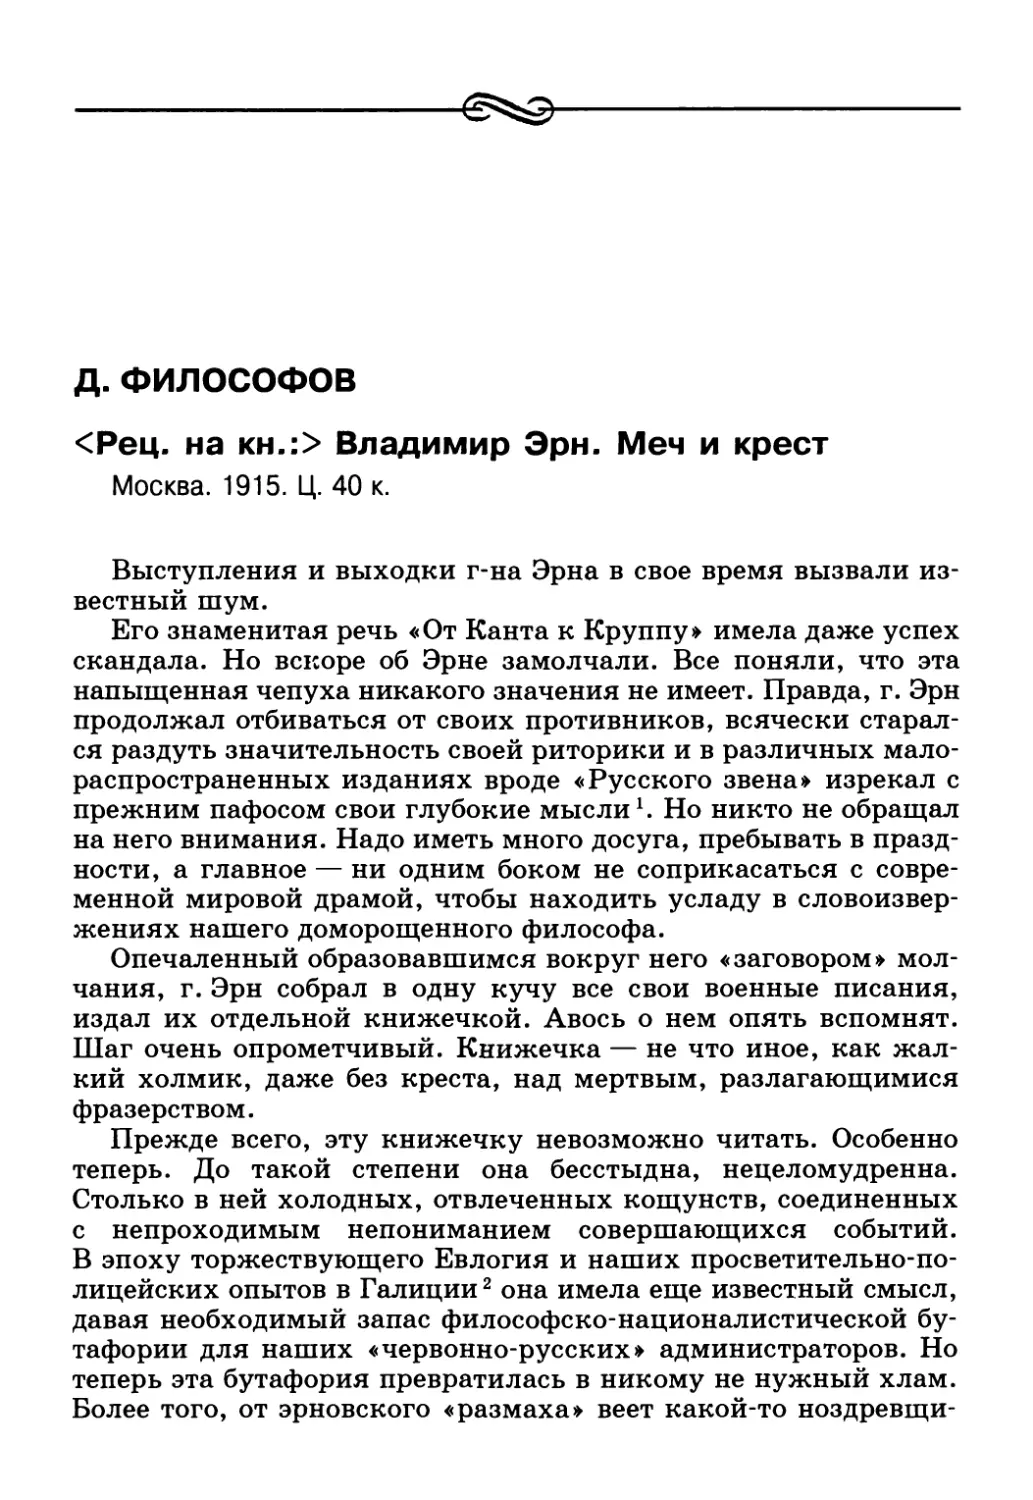 Д. Философов. <Рец. на кн.:> Владимир Эрн. Меч и крест. Москва. 1915